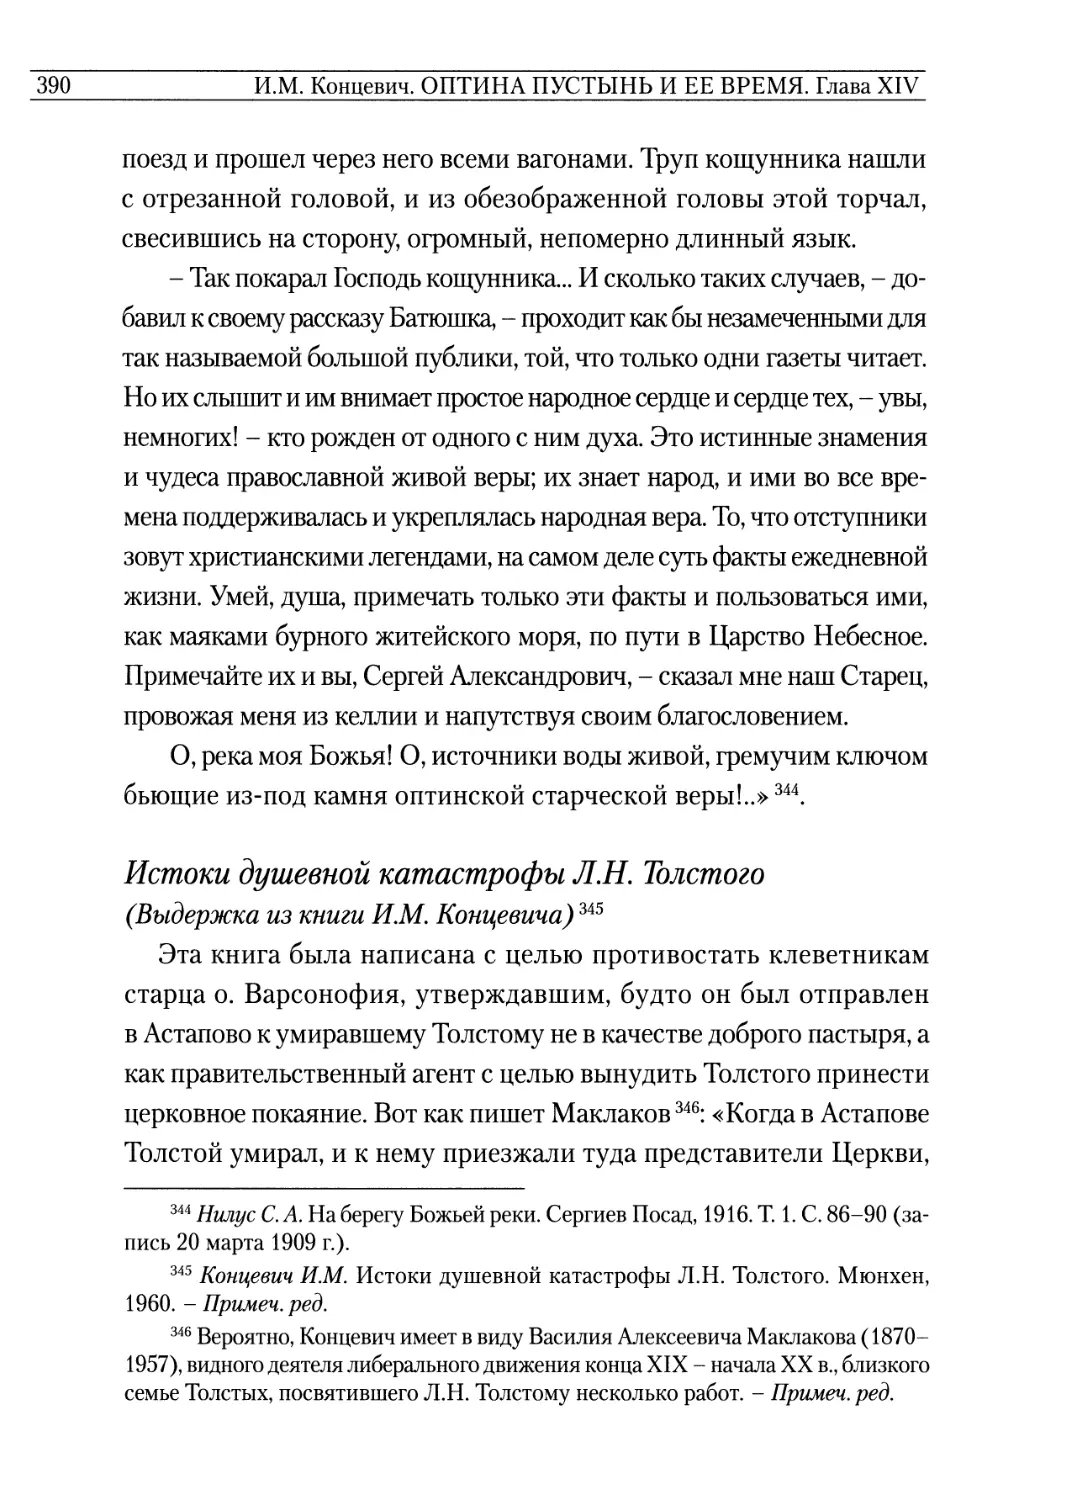 Истоки душевной катастрофы Л. Н. Толстого